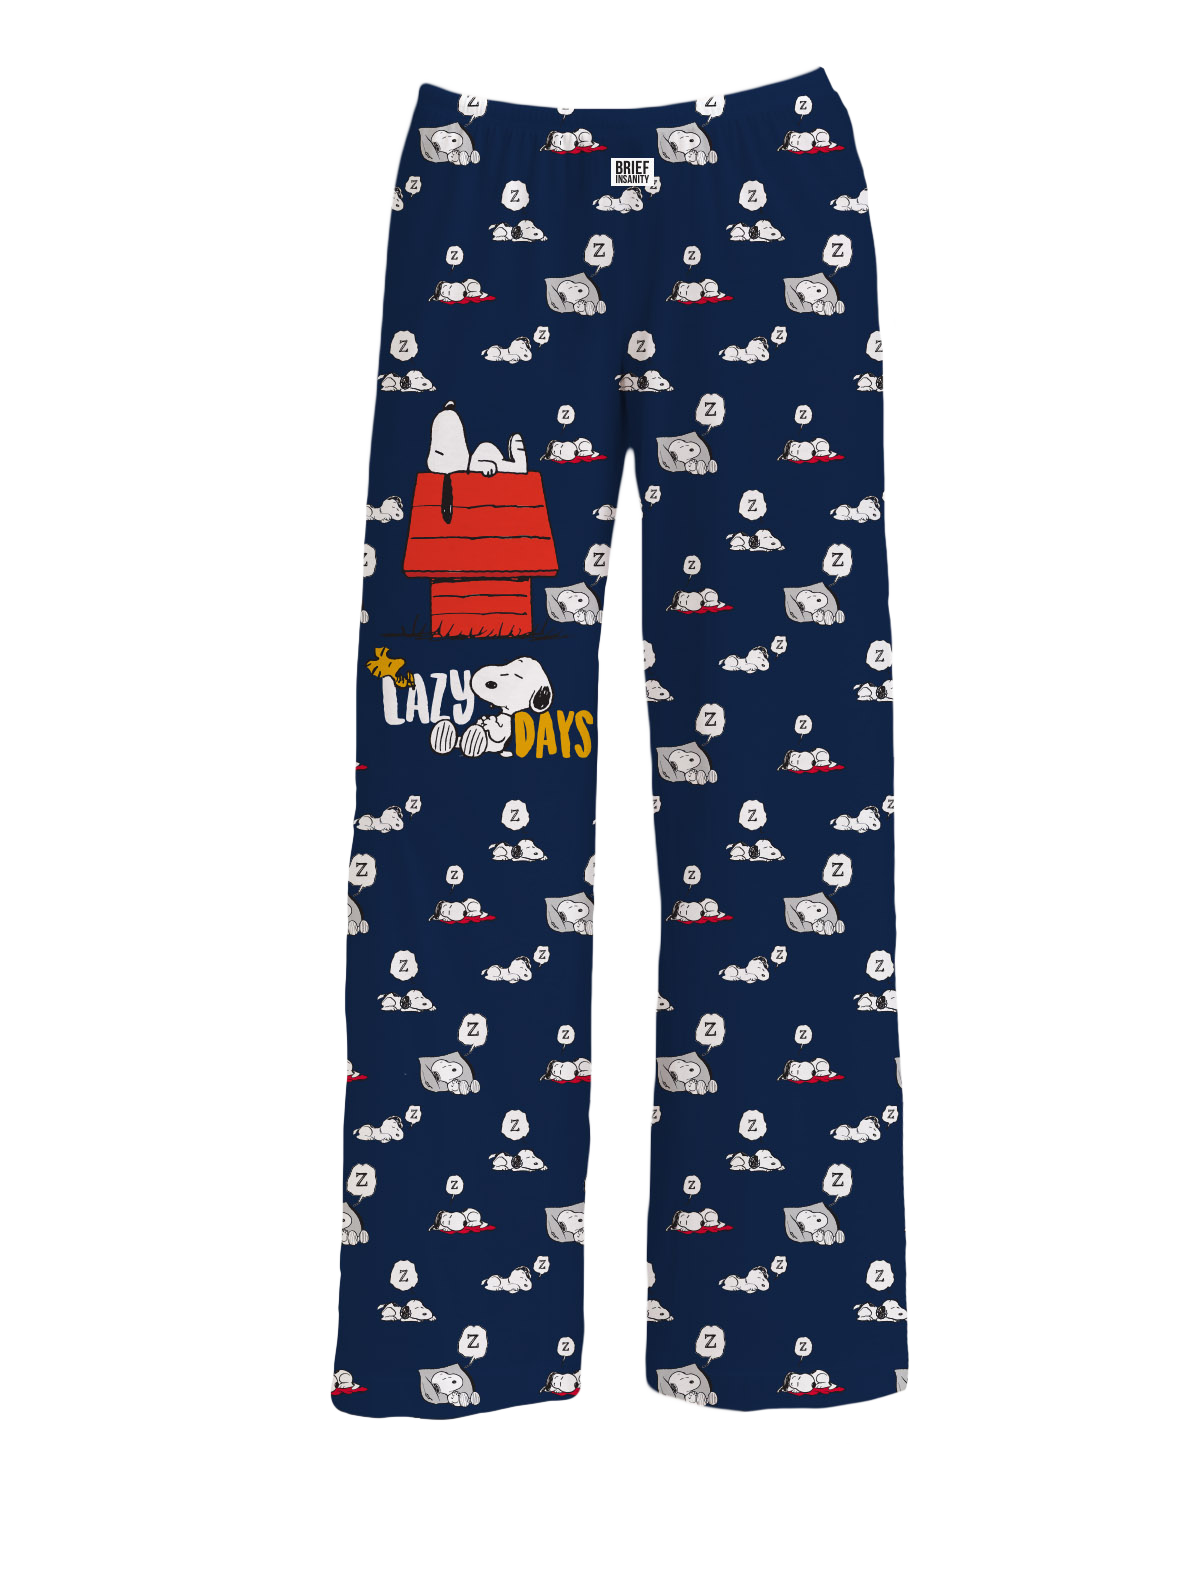 Peanuts Men's Joe Cool Snoopy Pajamas Long Sleeve Raglan Shirt And Pant 2  Piece Pjs Adult Pajama Set